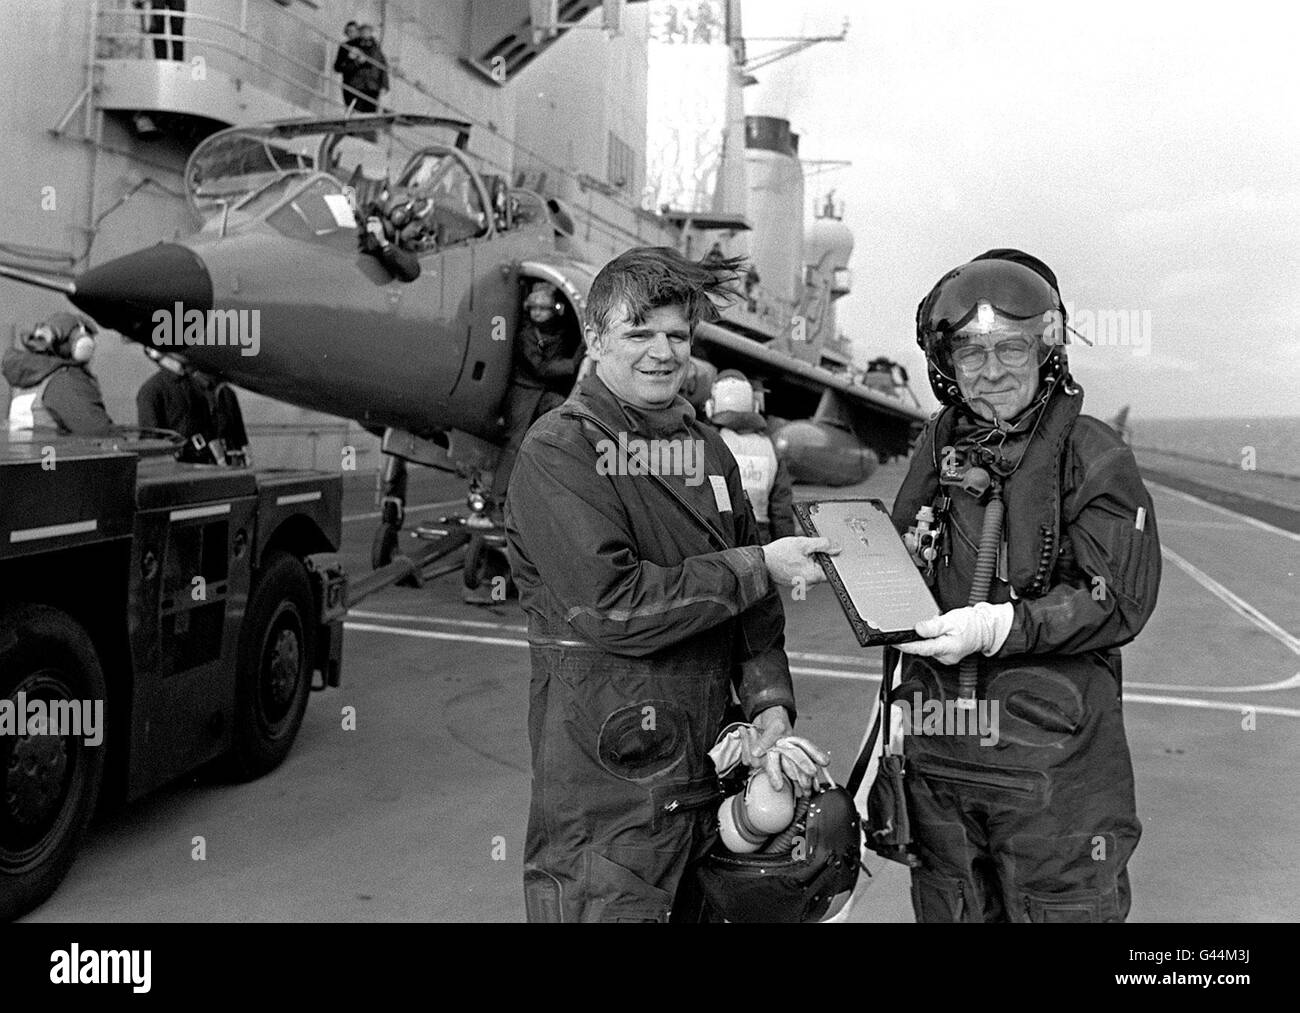 Bibliotheks-Filer Nr. 226501-1, datiert 8.2.88, des ehemaligen Testpiloten Bill Bedford (rechts), der als erster einen Prototyp eines Harrier-Sprungjets auf einem Flugzeugträger landet und eine Gedenktafel an Captain Mike Harris übergibt, Dann kommandierender Offizier der HMS Ark Royal, am 25. Jahrestag der Veranstaltung. Herr Bedford ist gestorben, wie heute (Montag) bekannt gegeben wurde. PA. SIEHE PA GESCHICHTE TOD BEDFORD. **nur in Schwarzweiß verfügbar** Stockfoto